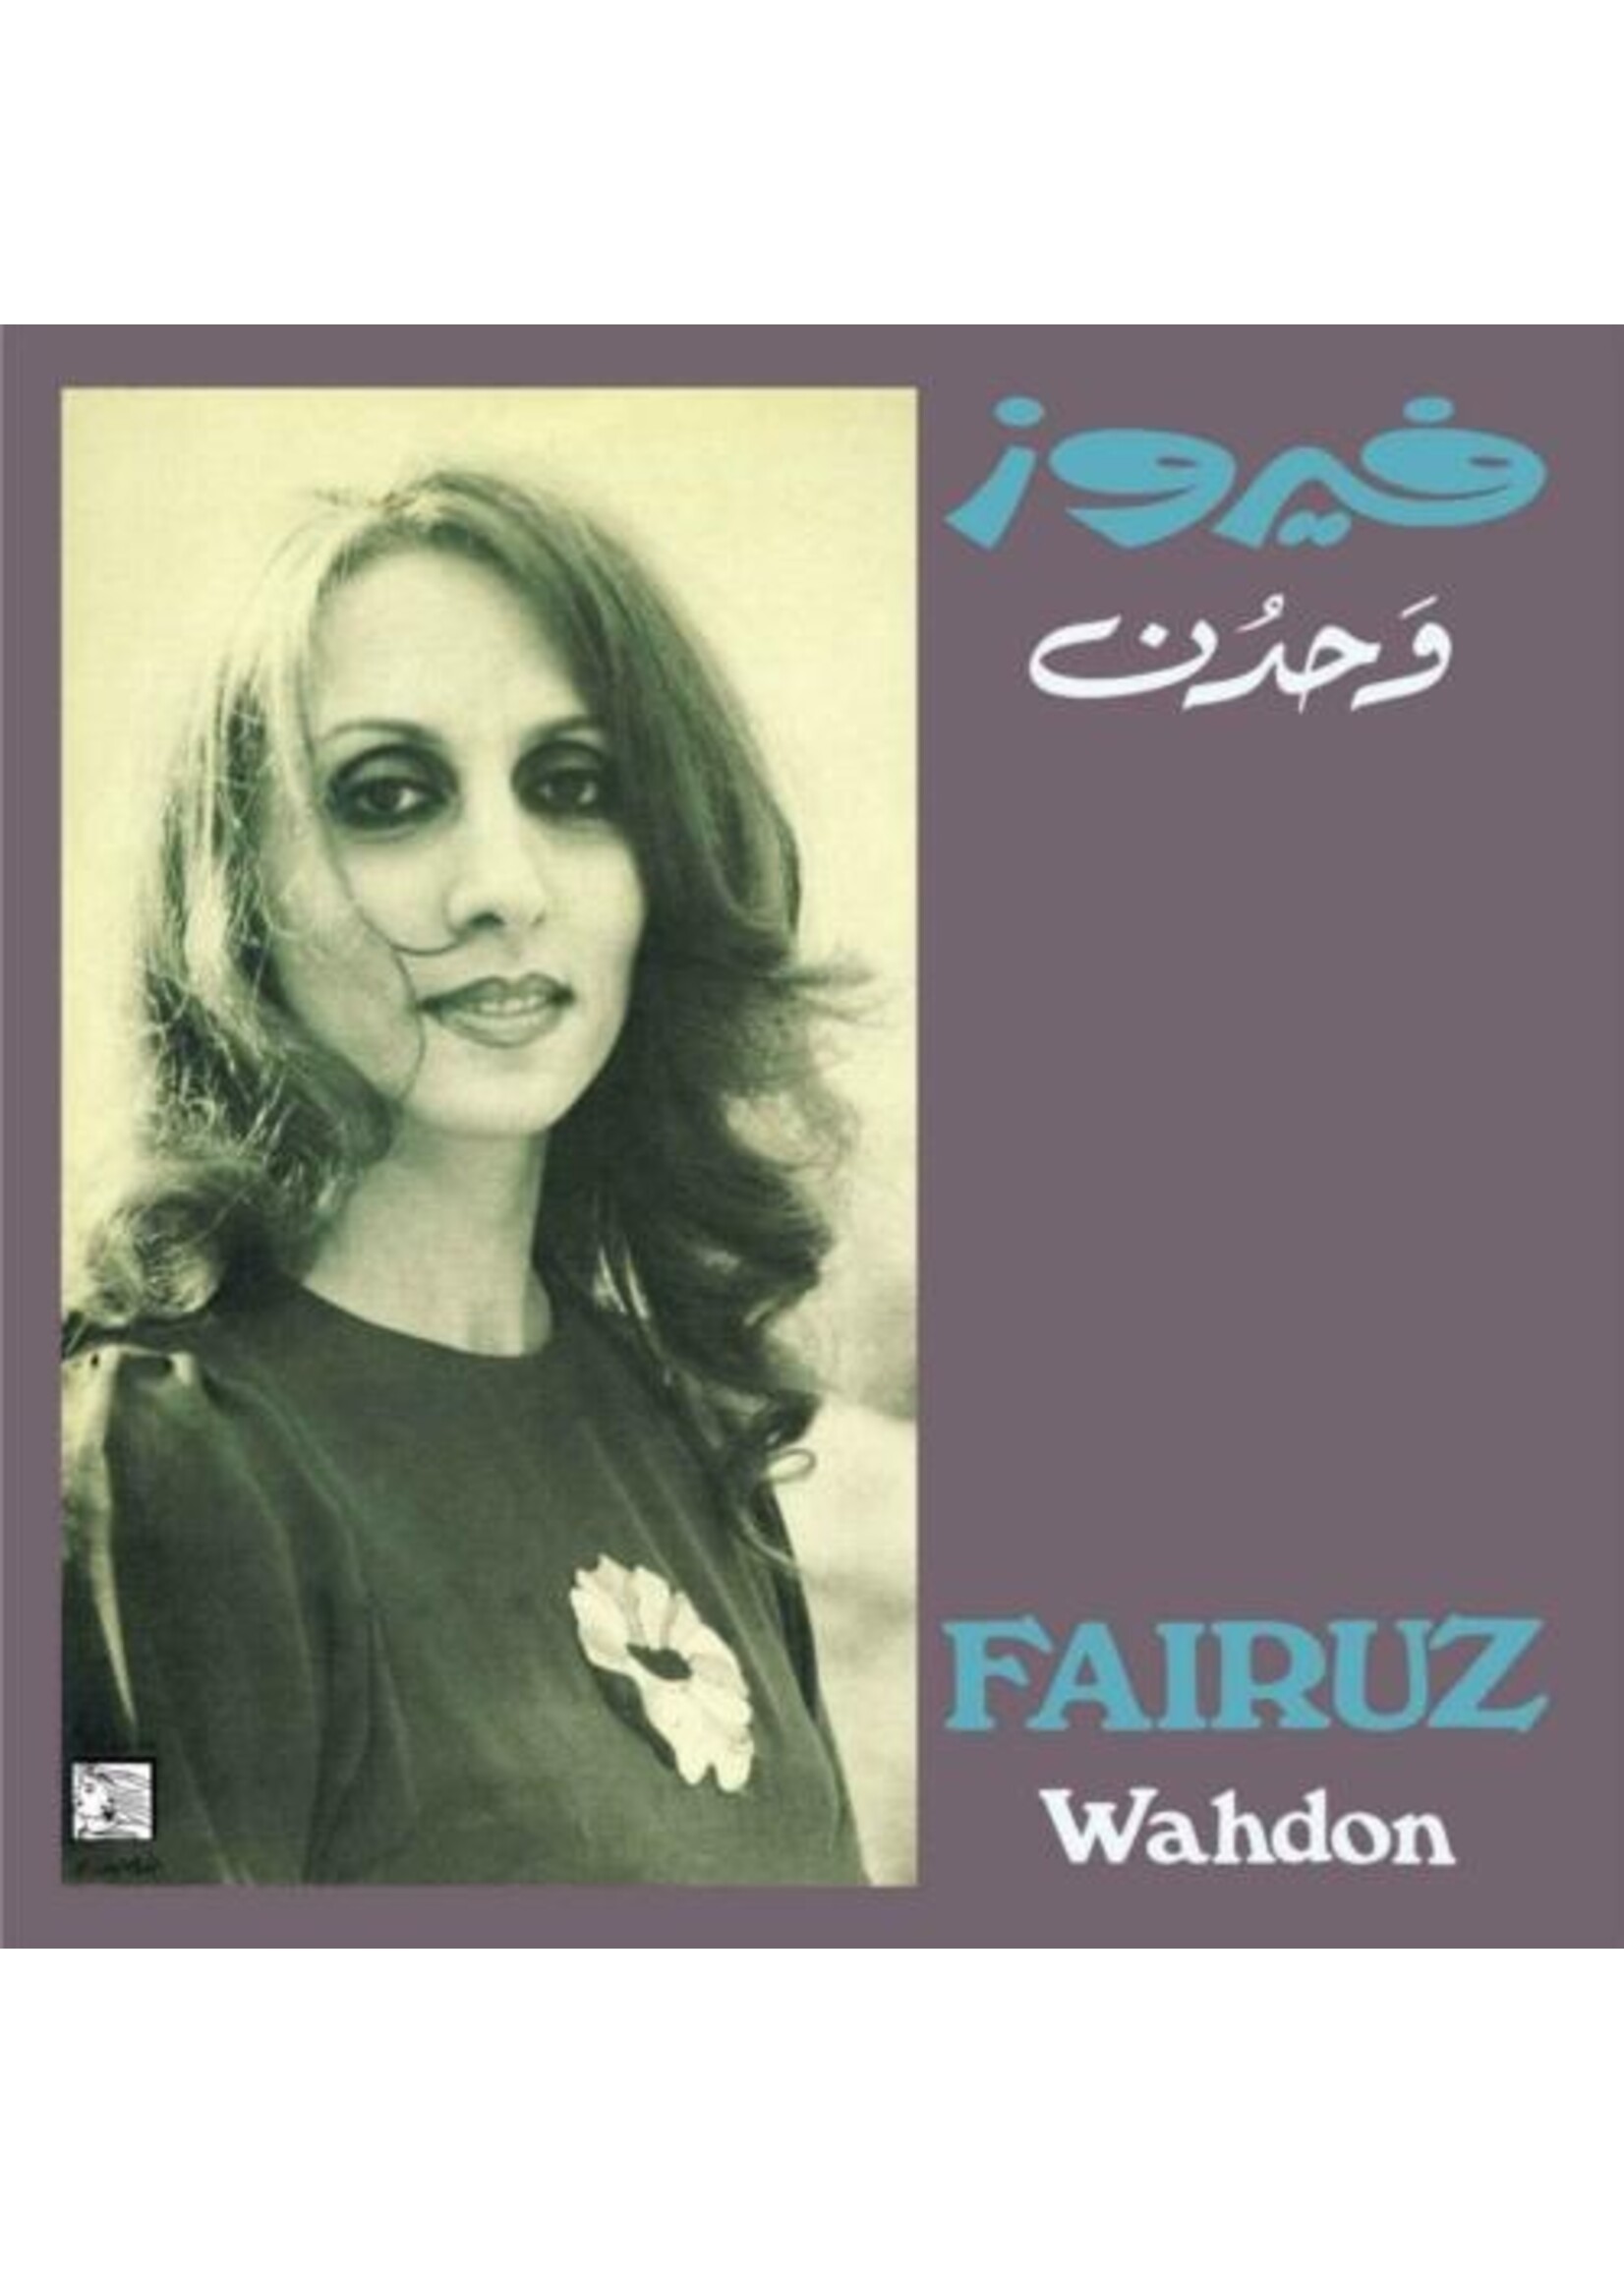 Fairuz - Wahdon LP